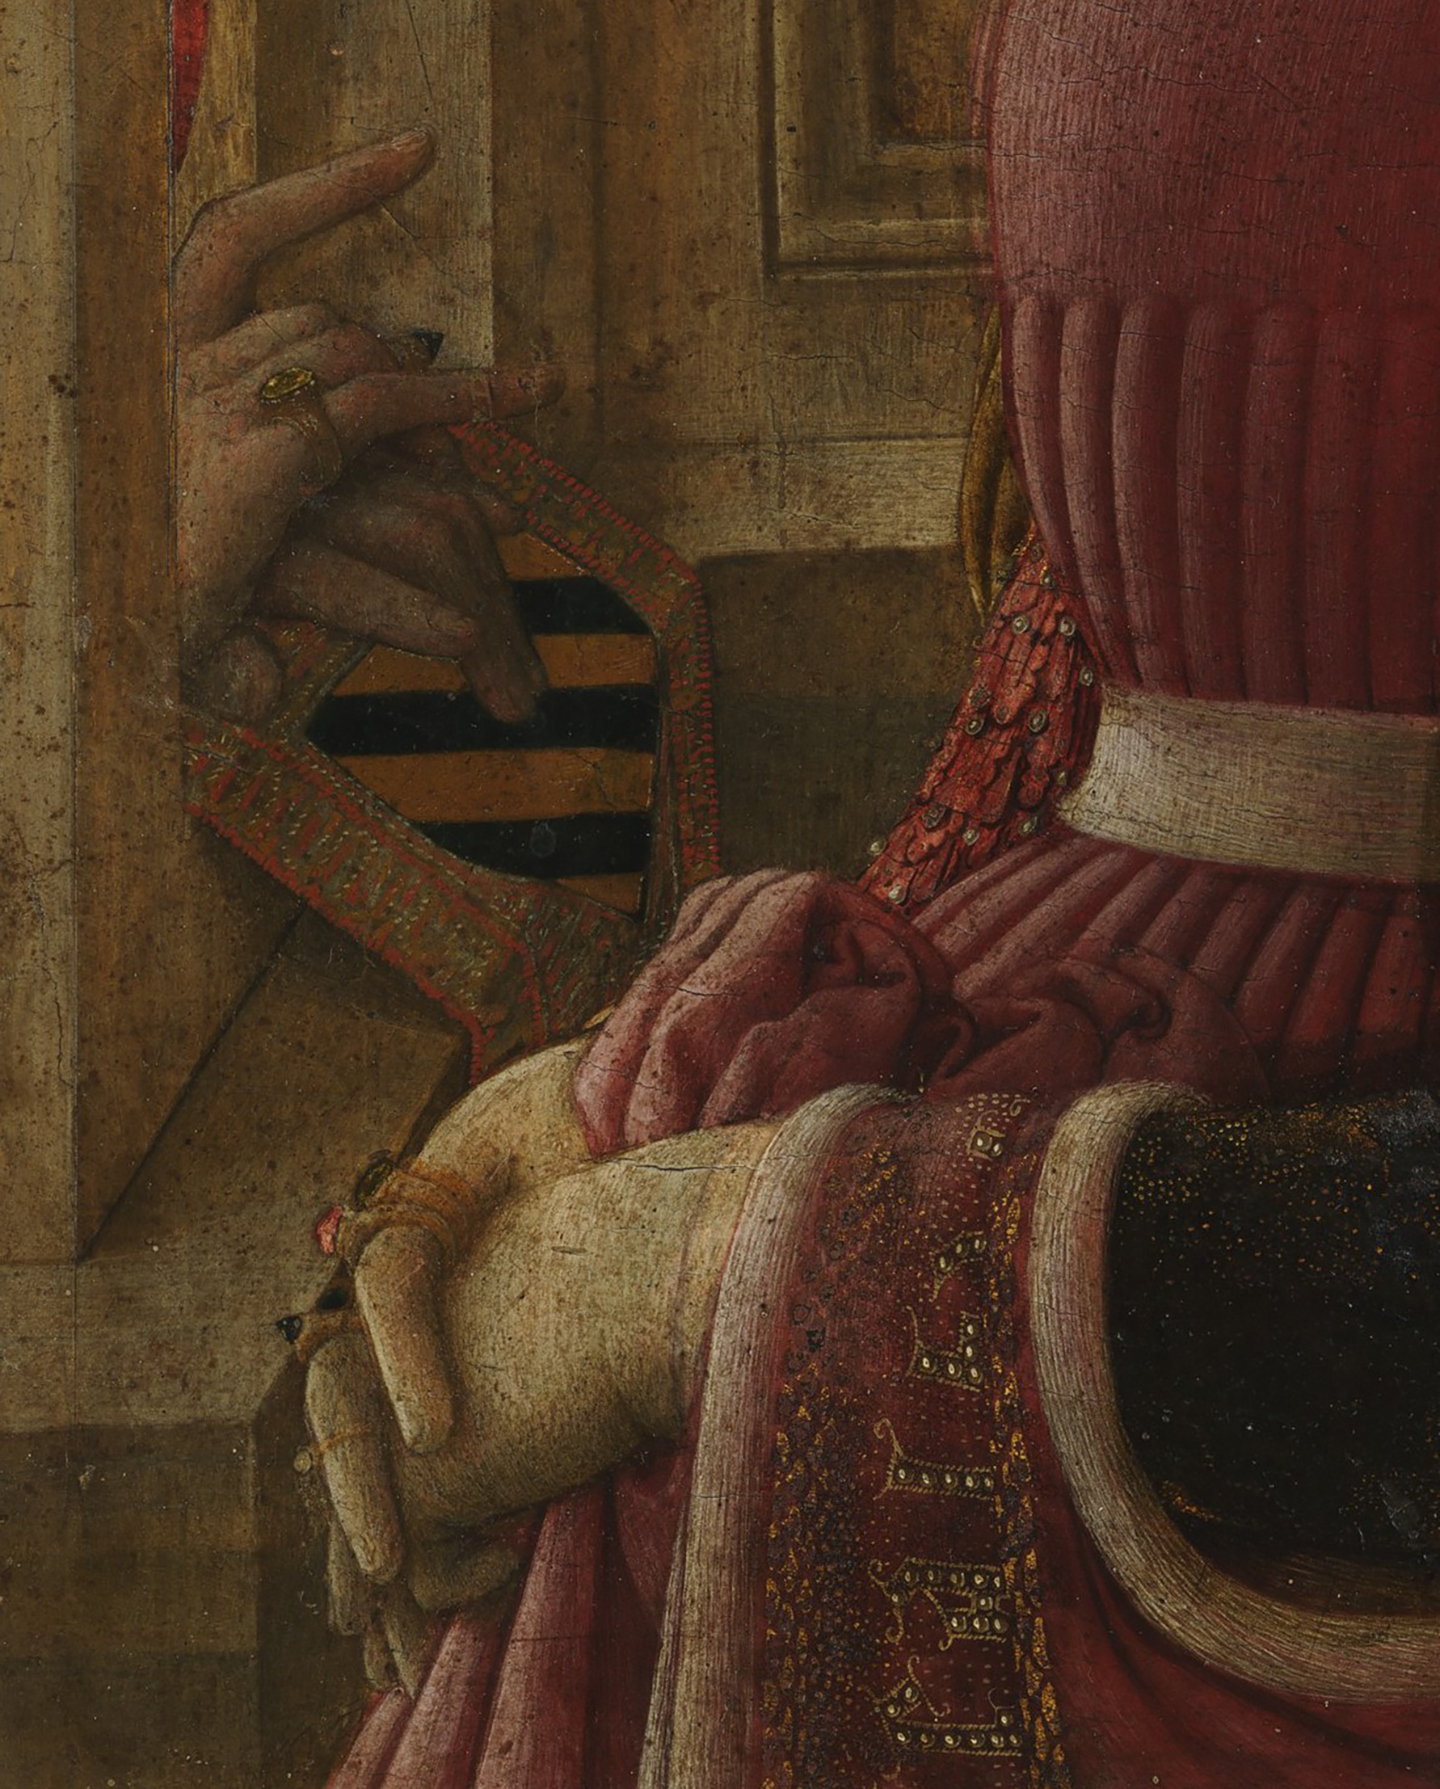 Chi tiết bàn tay và nhẫn của người phụ nữ trong bức tranh “Portrait of a Woman With a Man at a Casement” (Chân dung người phụ nữ và người đàn ông bên cửa sổ) của họa sỹ Fra Filippo Lippi, khoảng năm 1440. (Ảnh: Tư liệu công cộng)